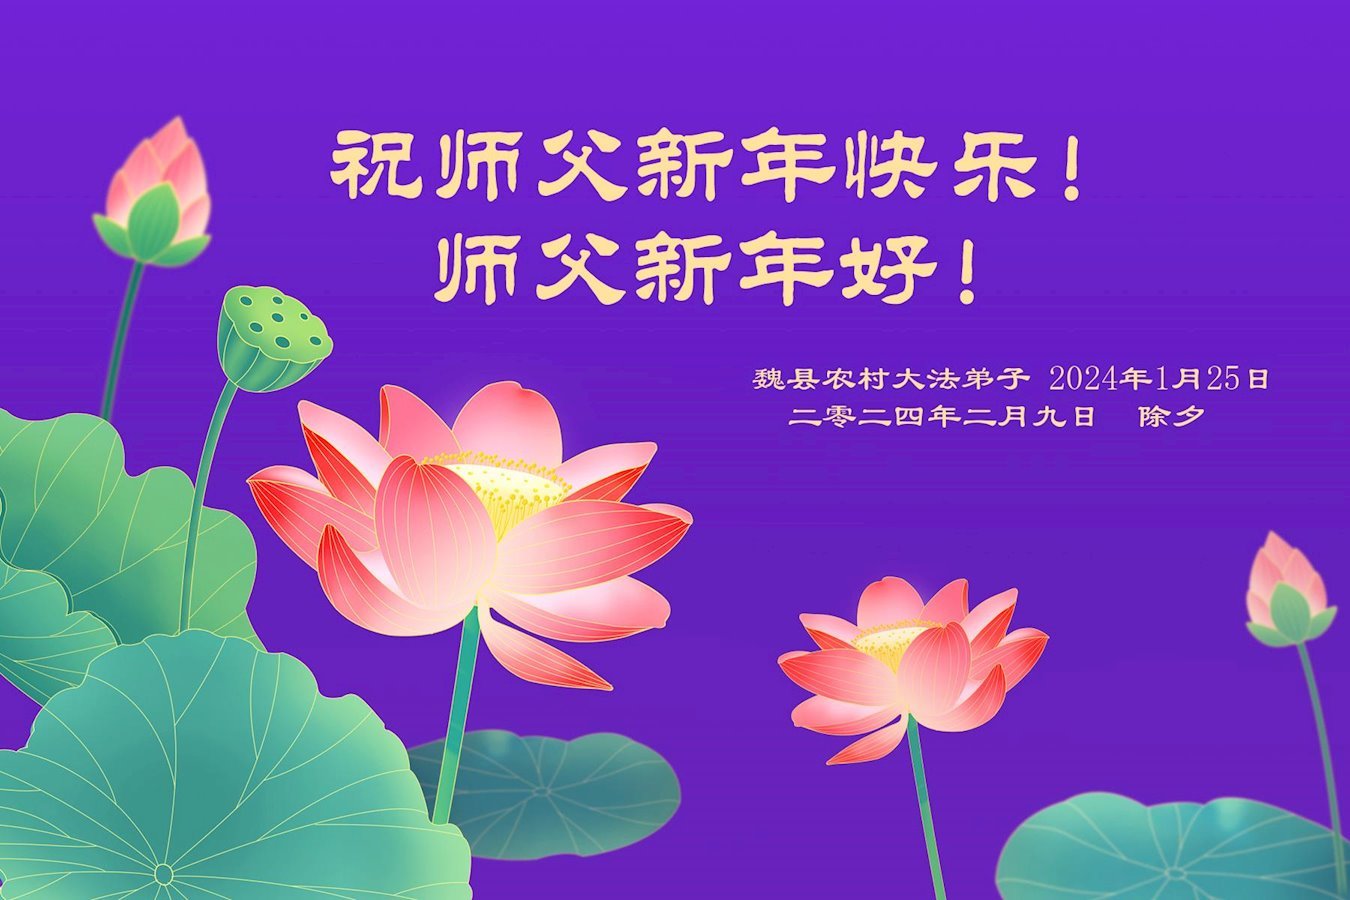 Image for article Les pratiquants de Falun Dafa des régions rurales en Chine souhaitent respectueusement au vénérable Maître Li Hongzhi un bon Nouvel An chinois